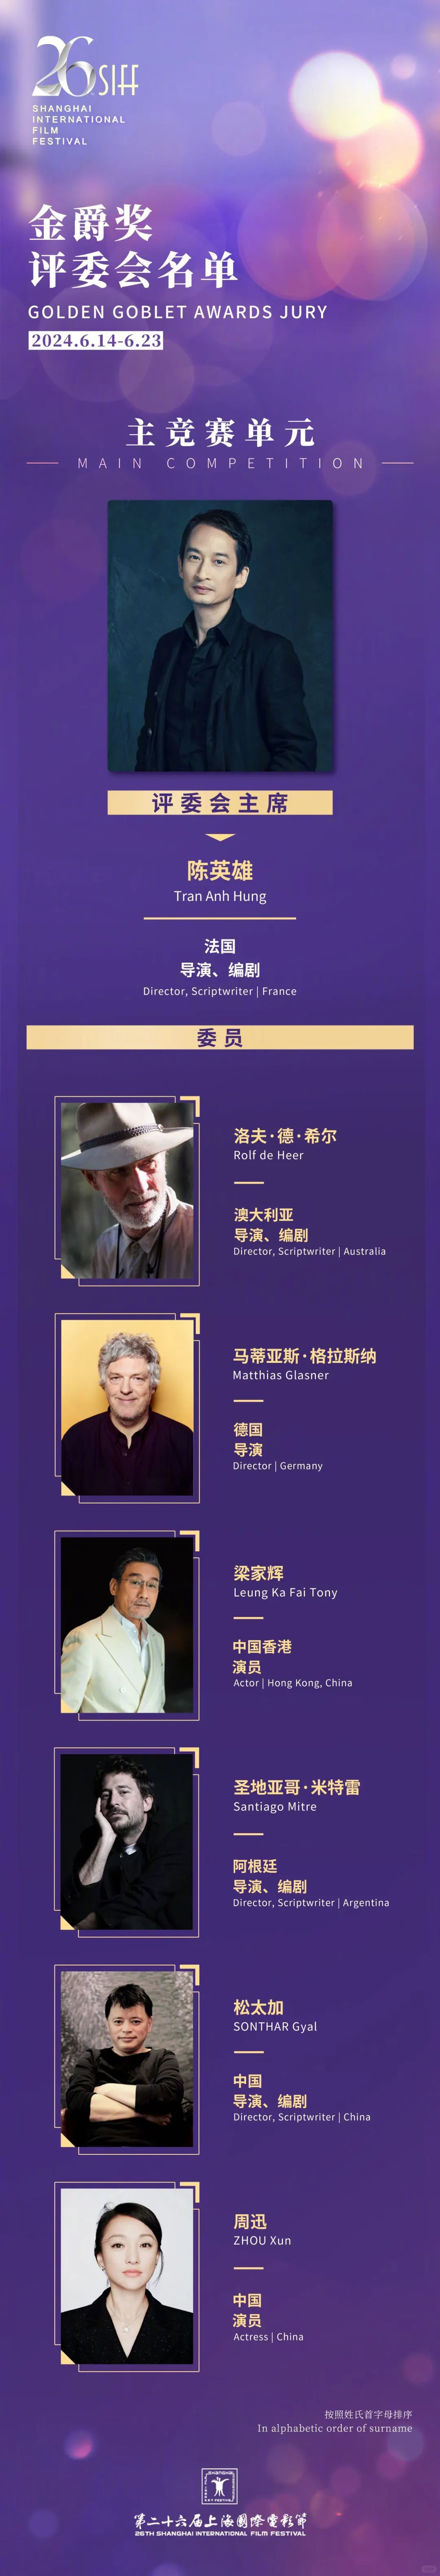 相约6月上海国际电影节